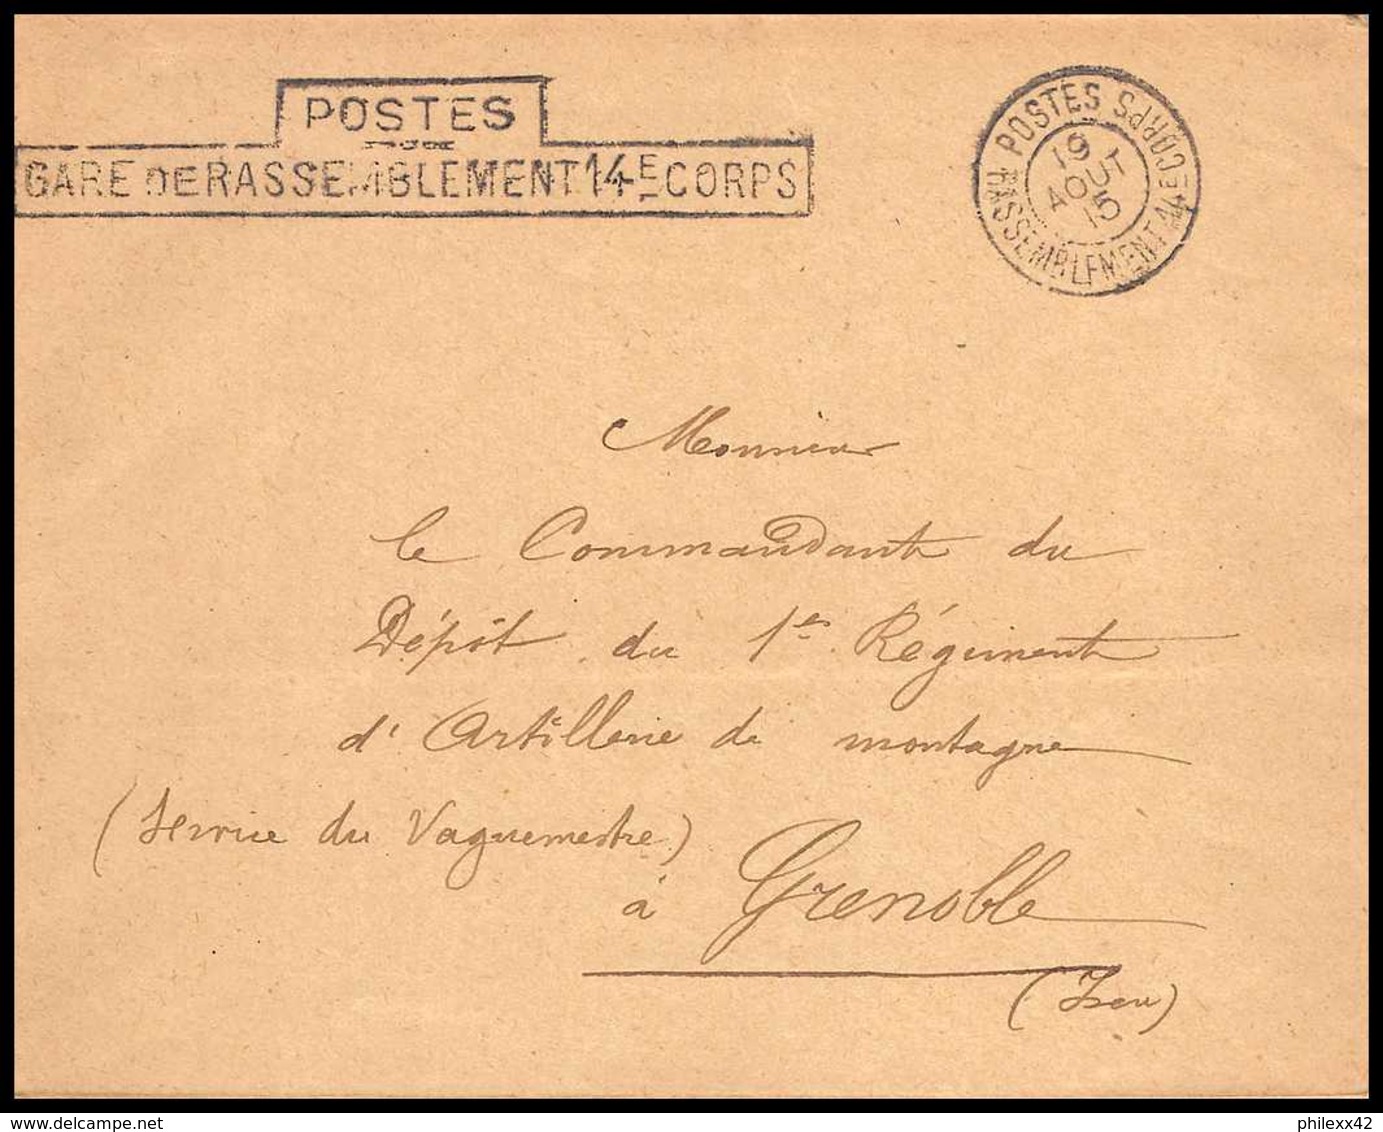 7923 Postes Gare De Rassemblement 14eme Corps 1915 France Guerre 1914/1918 Enveloppe Franchise Militaire Tb - WW I